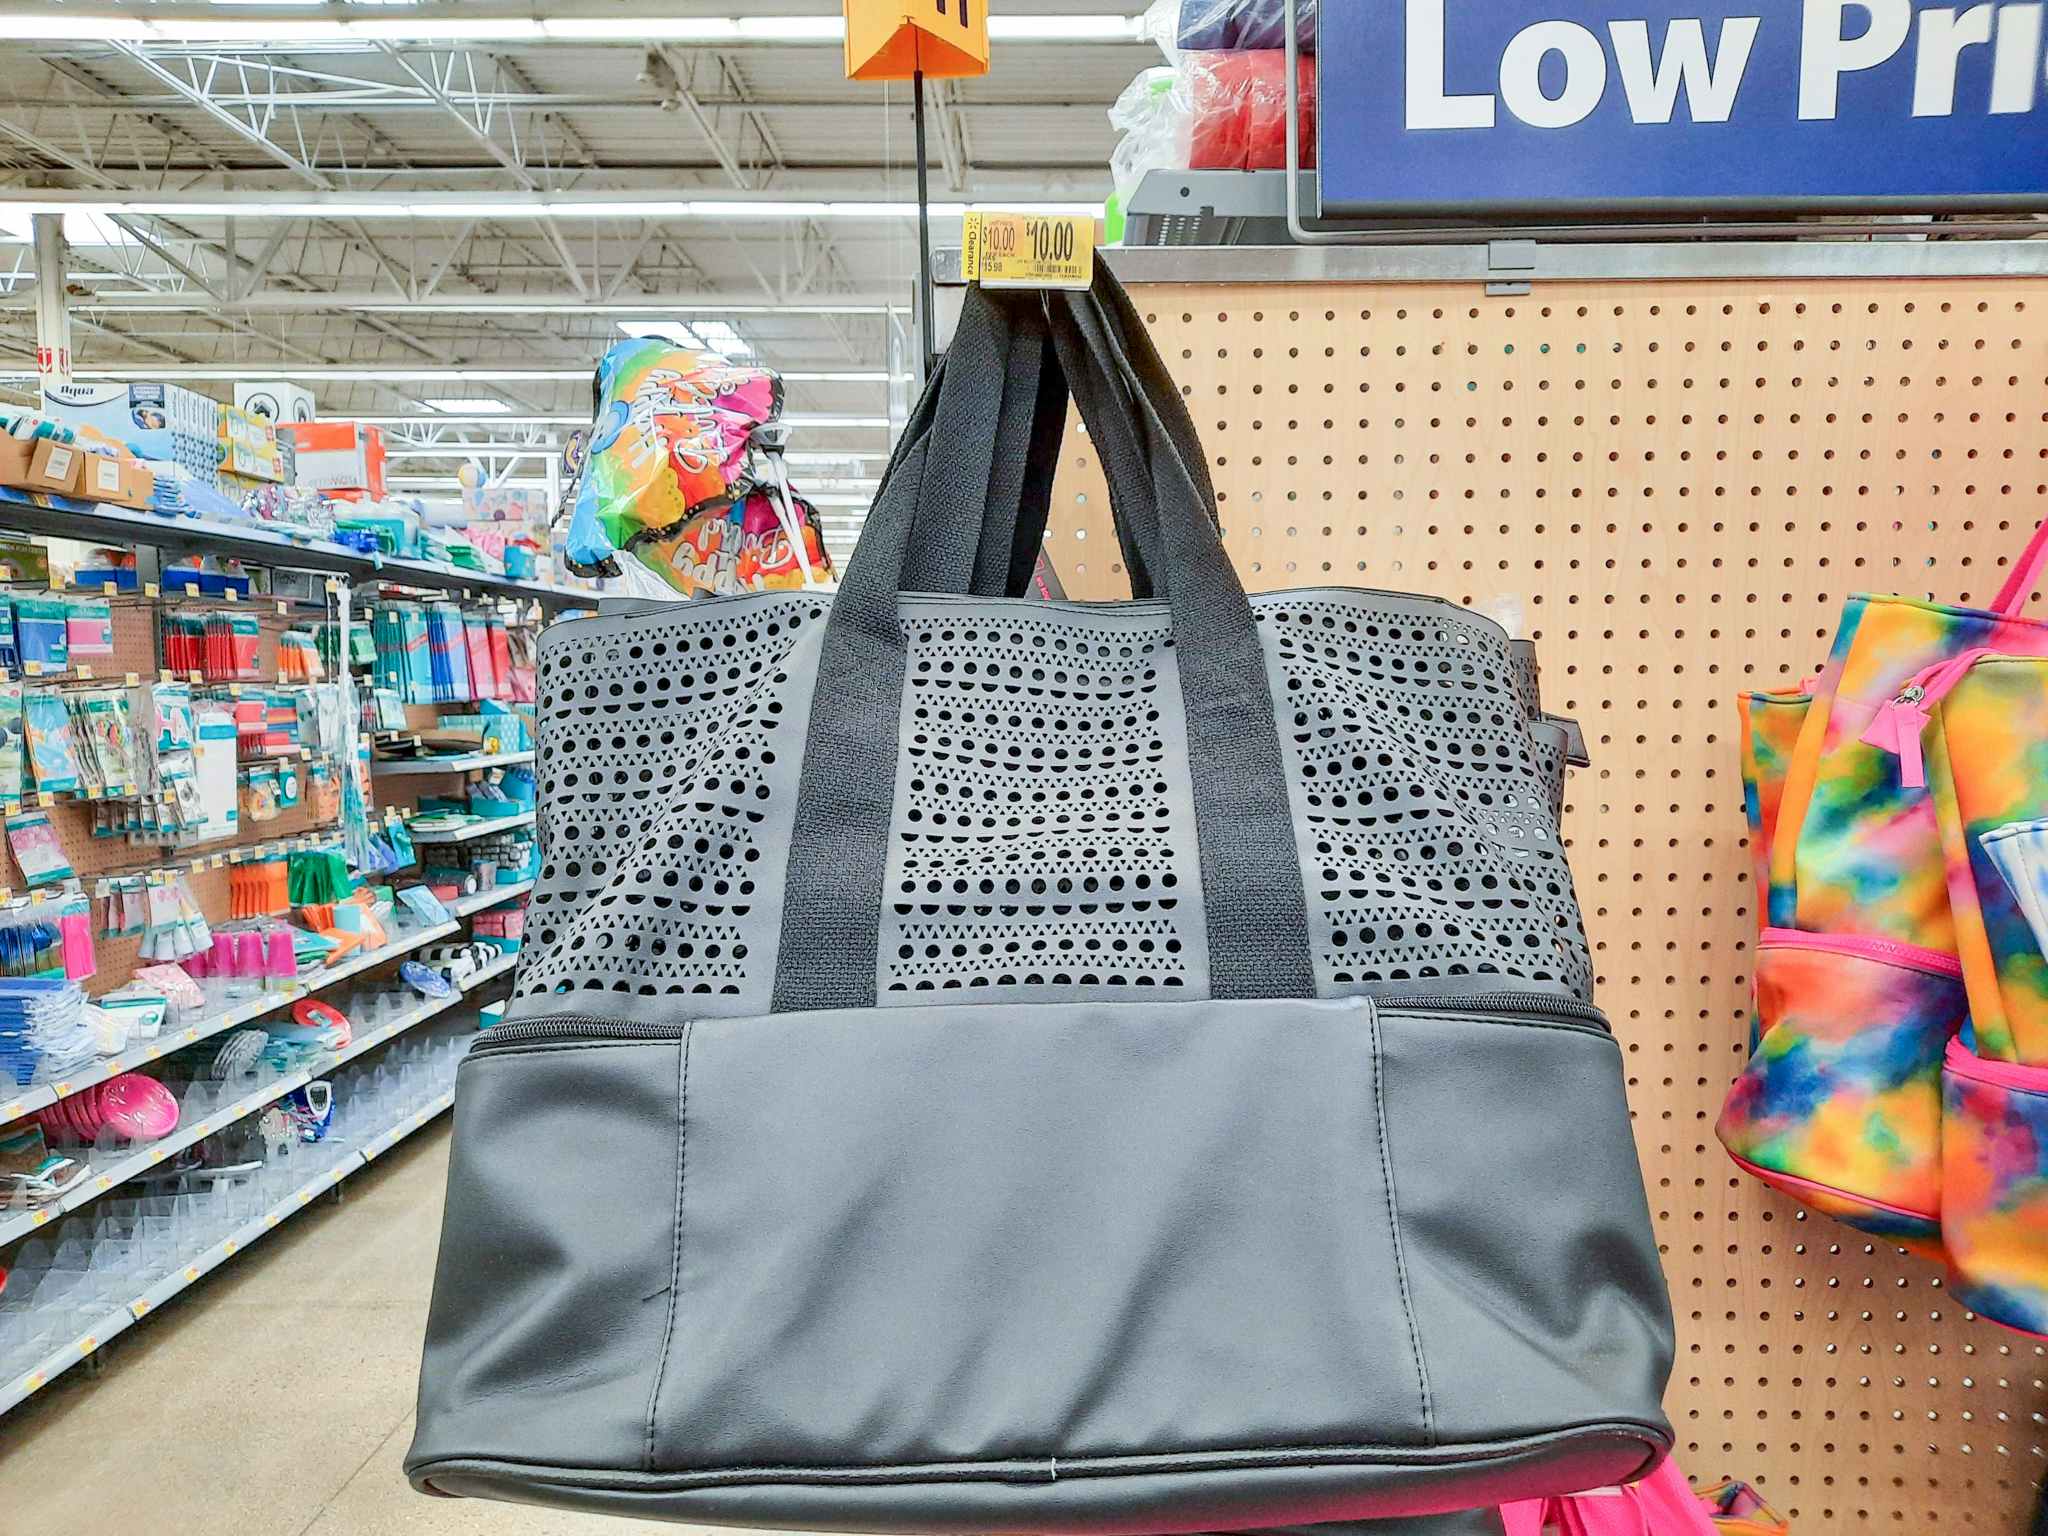 No Boundaries Beach Tote Bag With Cooler Bottom at Walmart